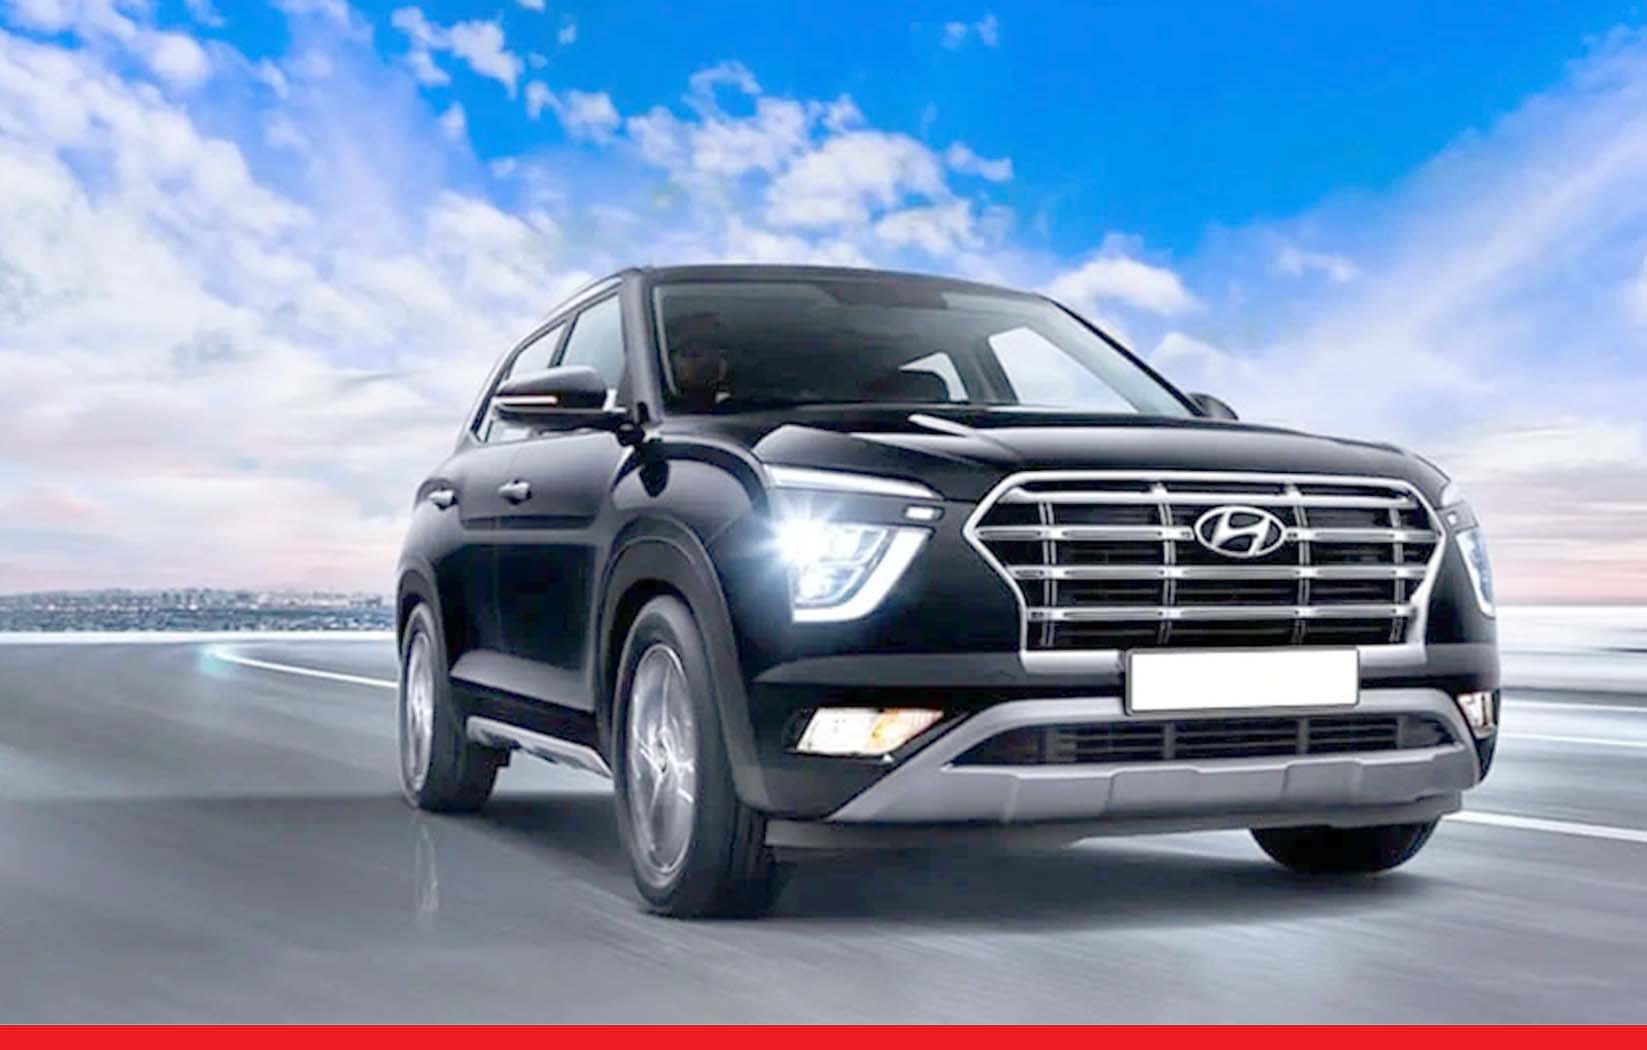 Hyundai कारों की बिक्री में भारी गिरावट दर्ज, कंपनी को पछाड़ TATA दूसरे नंबर पर